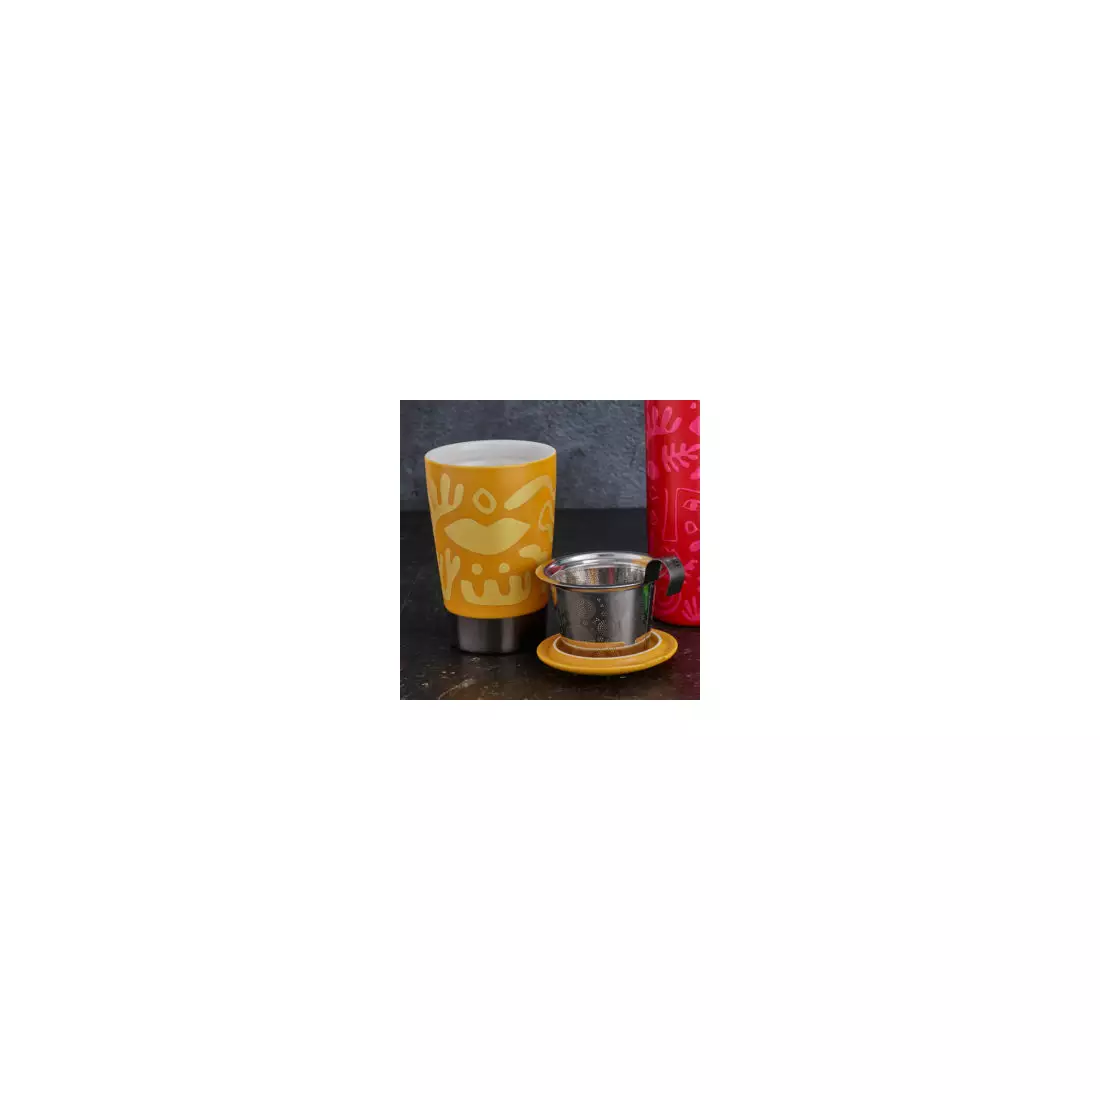 EIGENART TEAEVE cana termica, portelan 350 ml, opera yellow